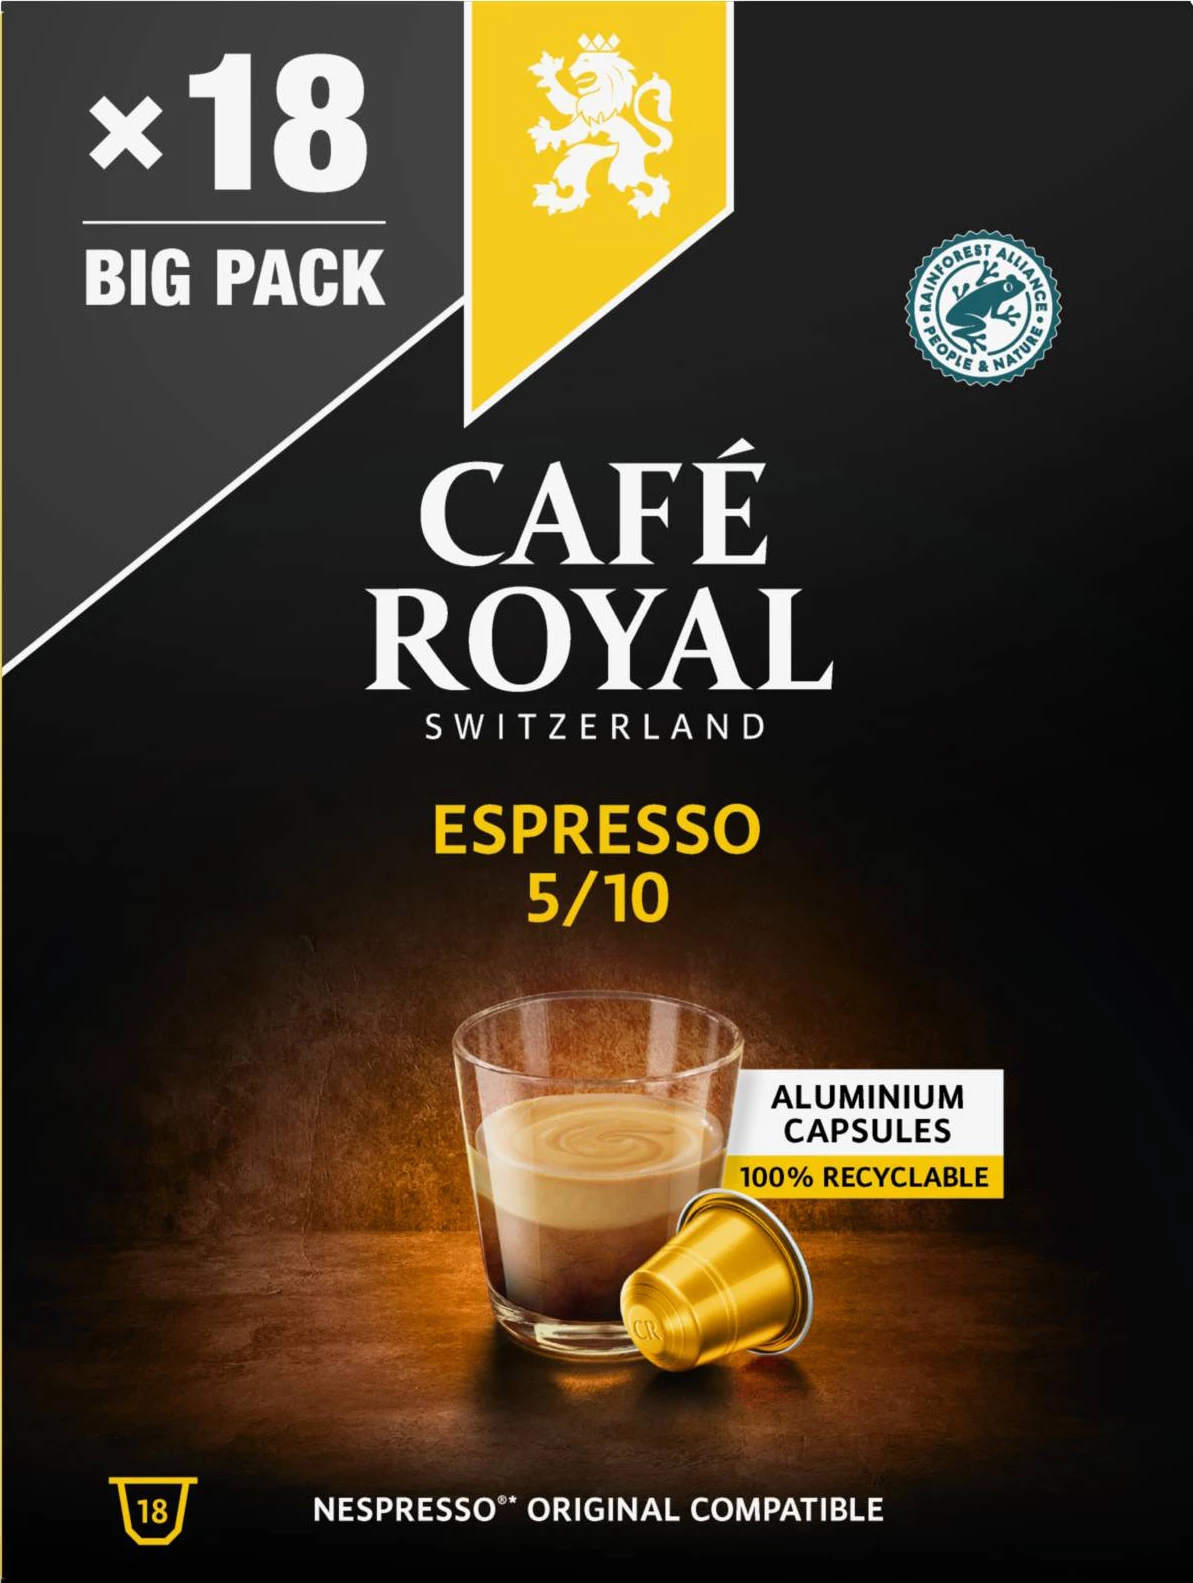 ネスプレッソ® 互換エスプレッソコーヒーカプセル x18 93g - CAFE ROYAL